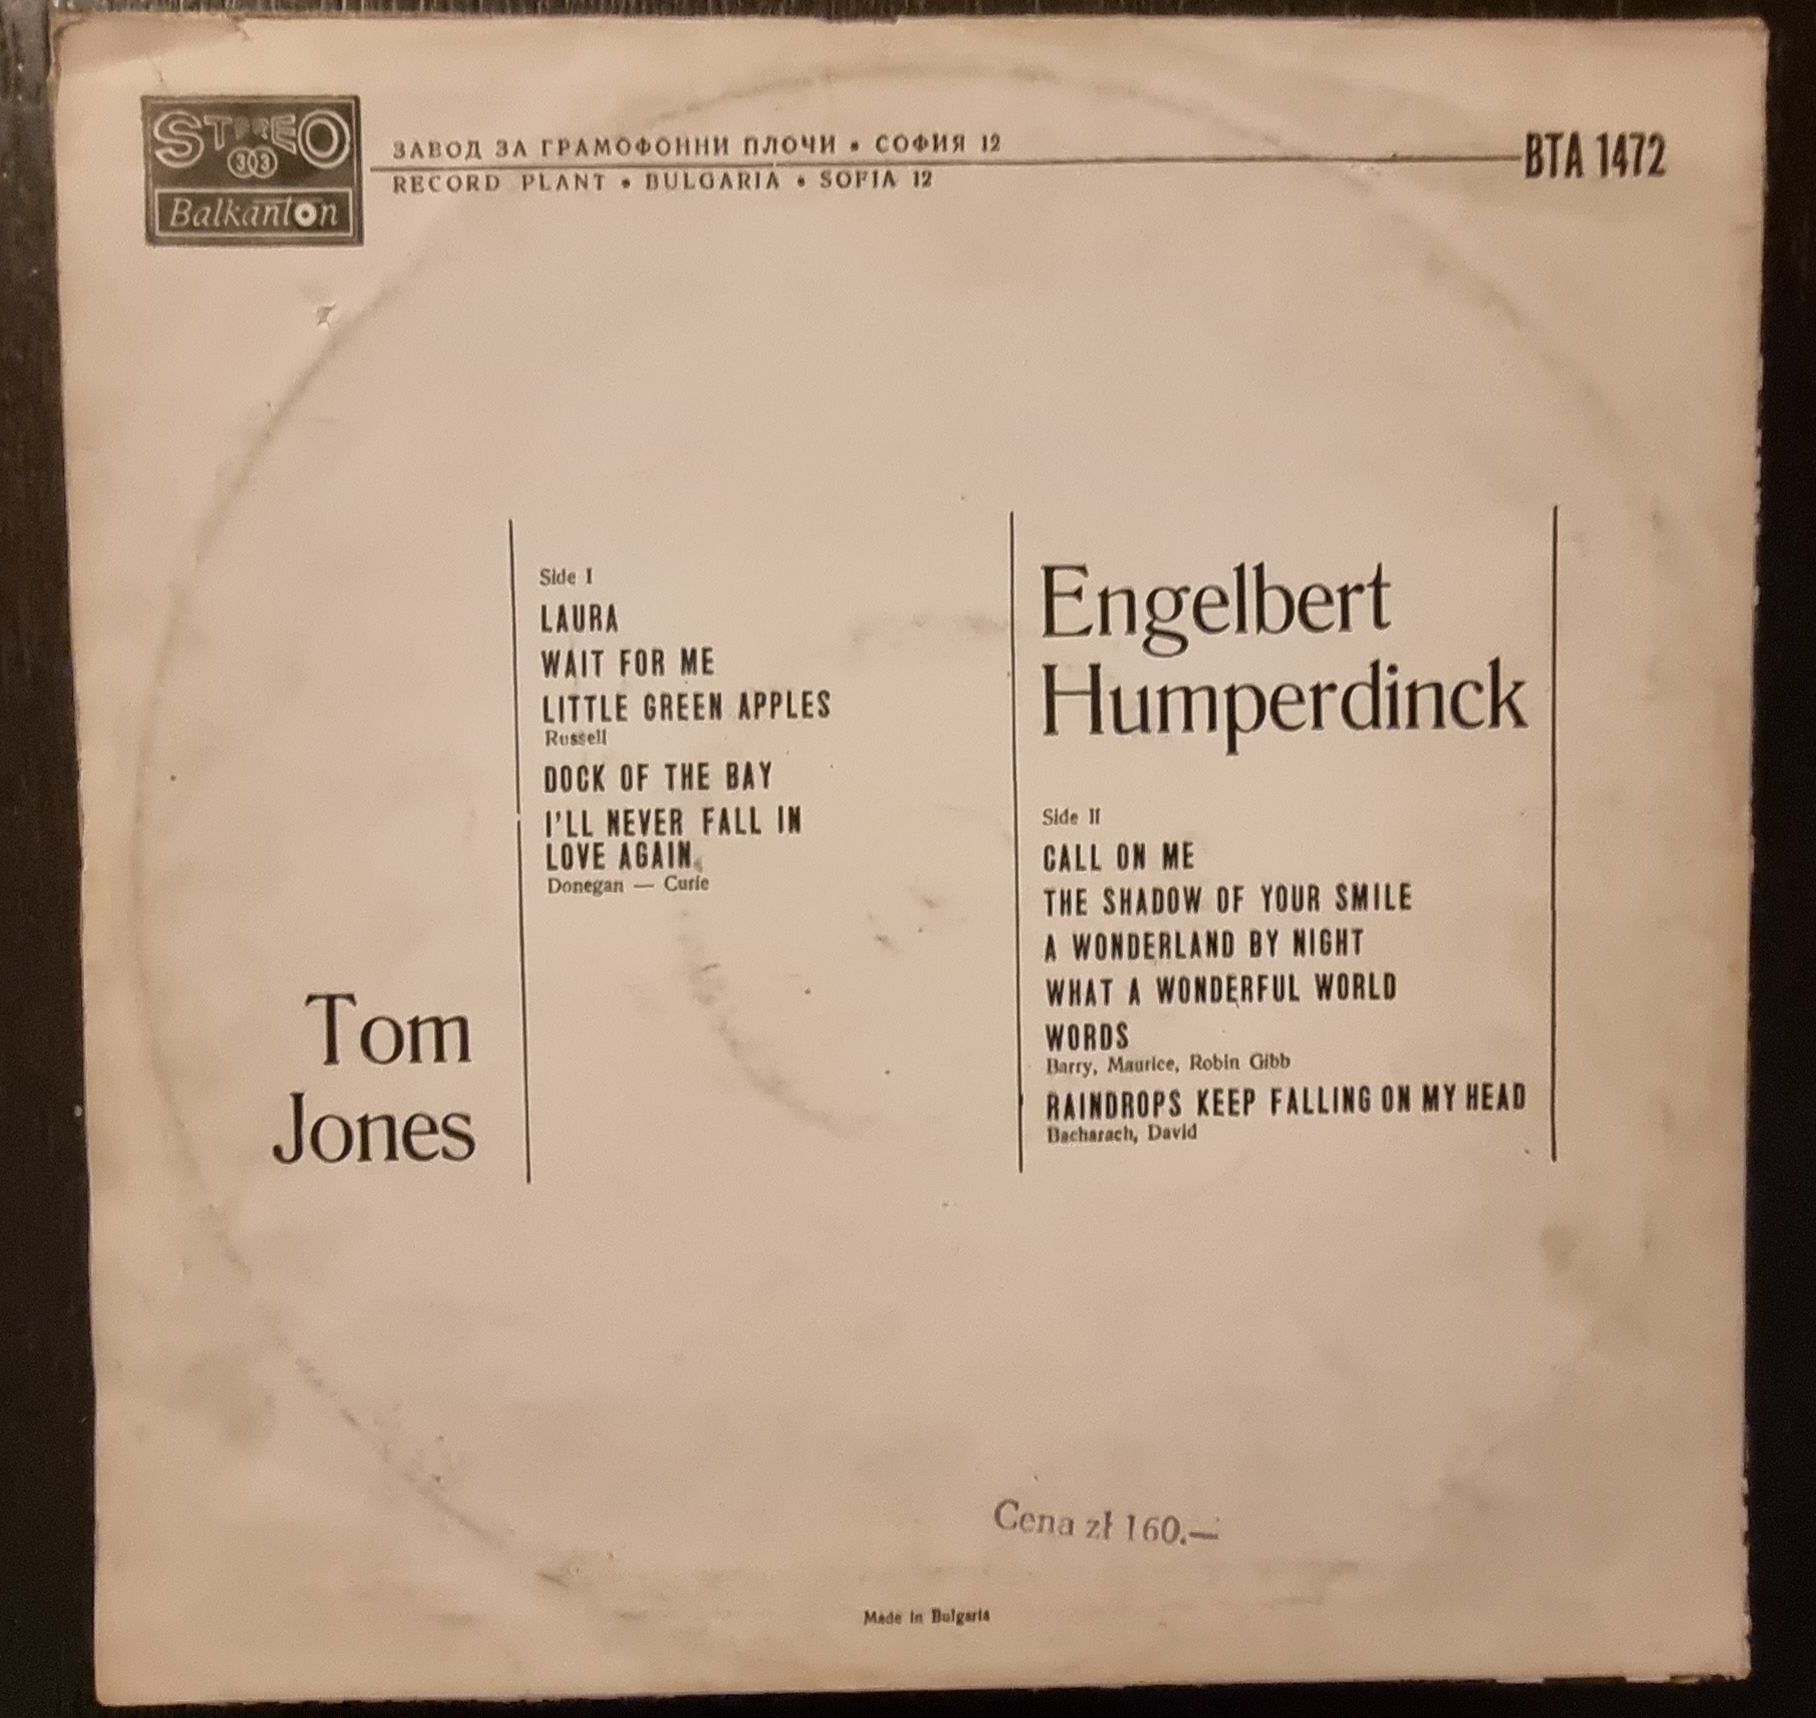 Tom Jones - Engelbert Humperdinck